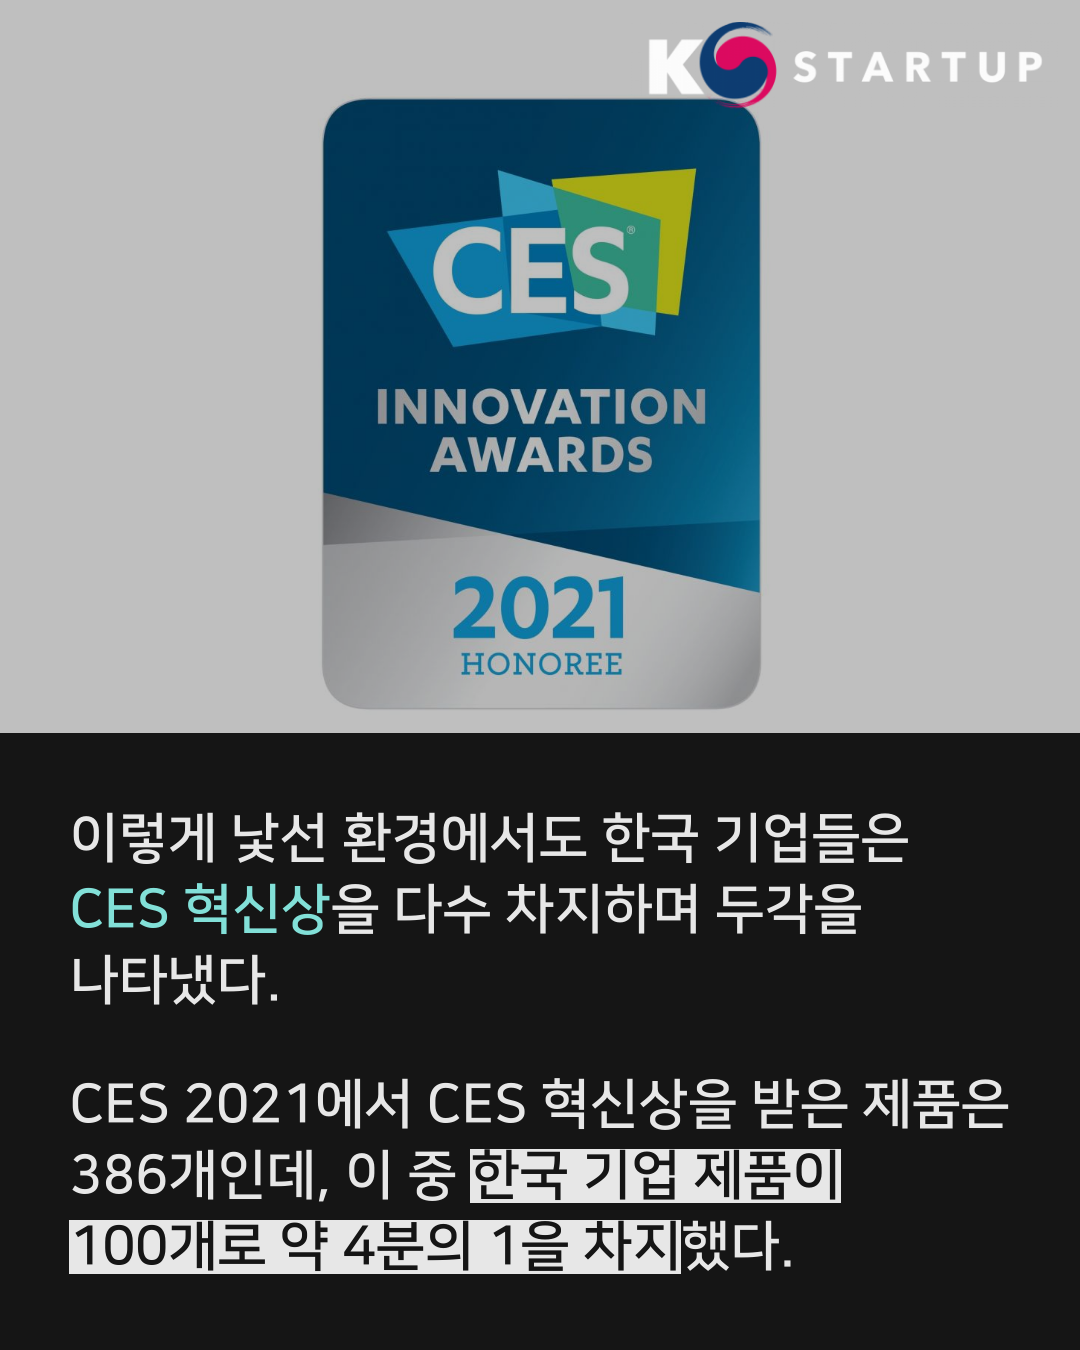 이렇듯 낯선 환경에서도 한국 기업들은 CES 혁신상을 다수 차지하며 두각을 나타냈다.
CES 2021에서 CES 혁신상을 받은 제품은 386개인데, 이 중 한국 기업 제품이 100개로 약 4분의 1을 차지했다.